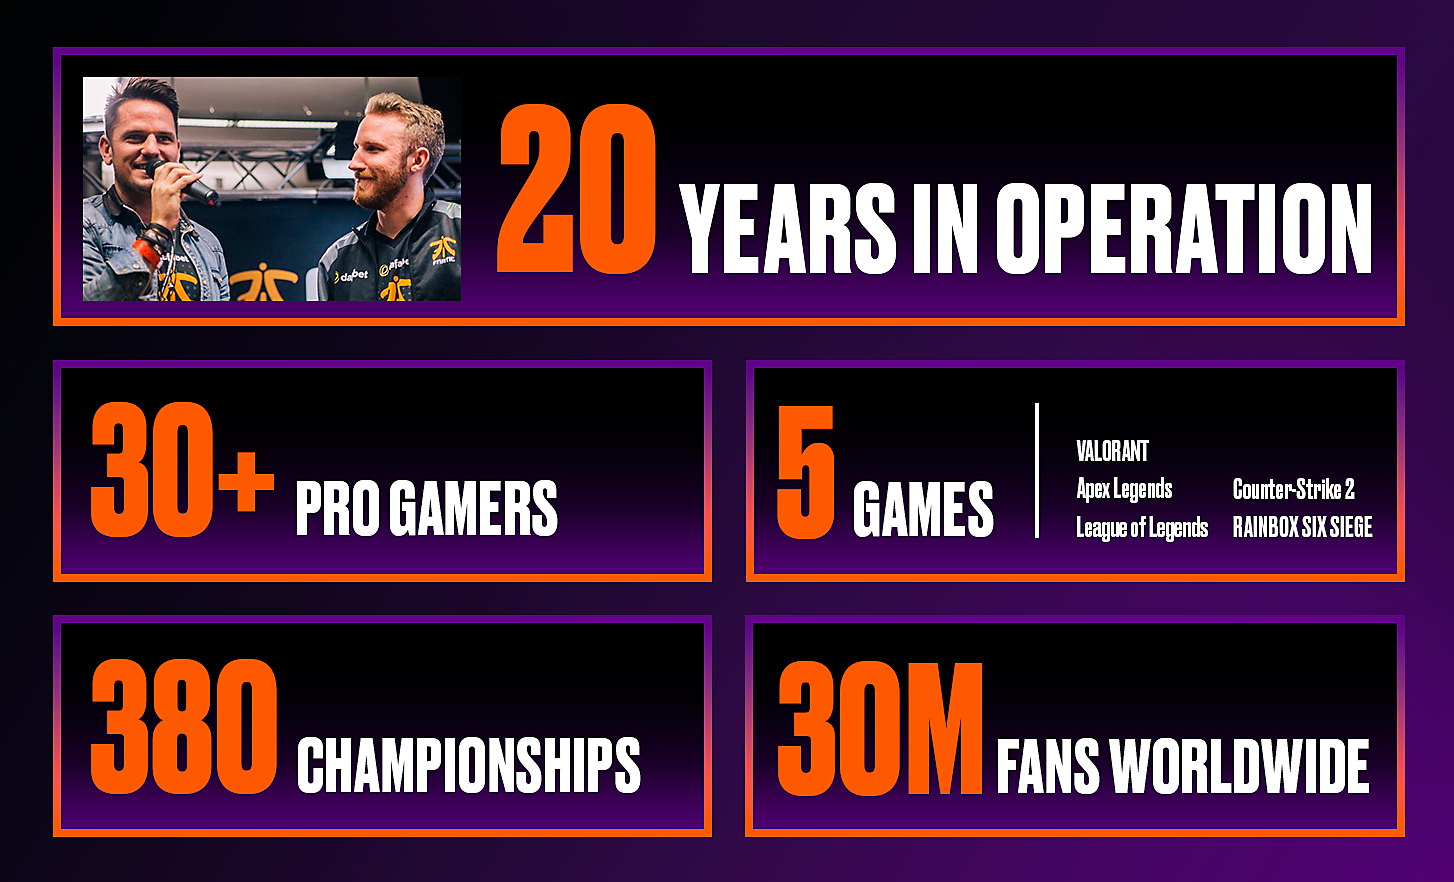 Cinq cadres affichent diverses statistiques sur Fnatic, notamment le nombre d'années d'activité et le nombre de joueurs professionnels, de jeux, de championnats et de fans.